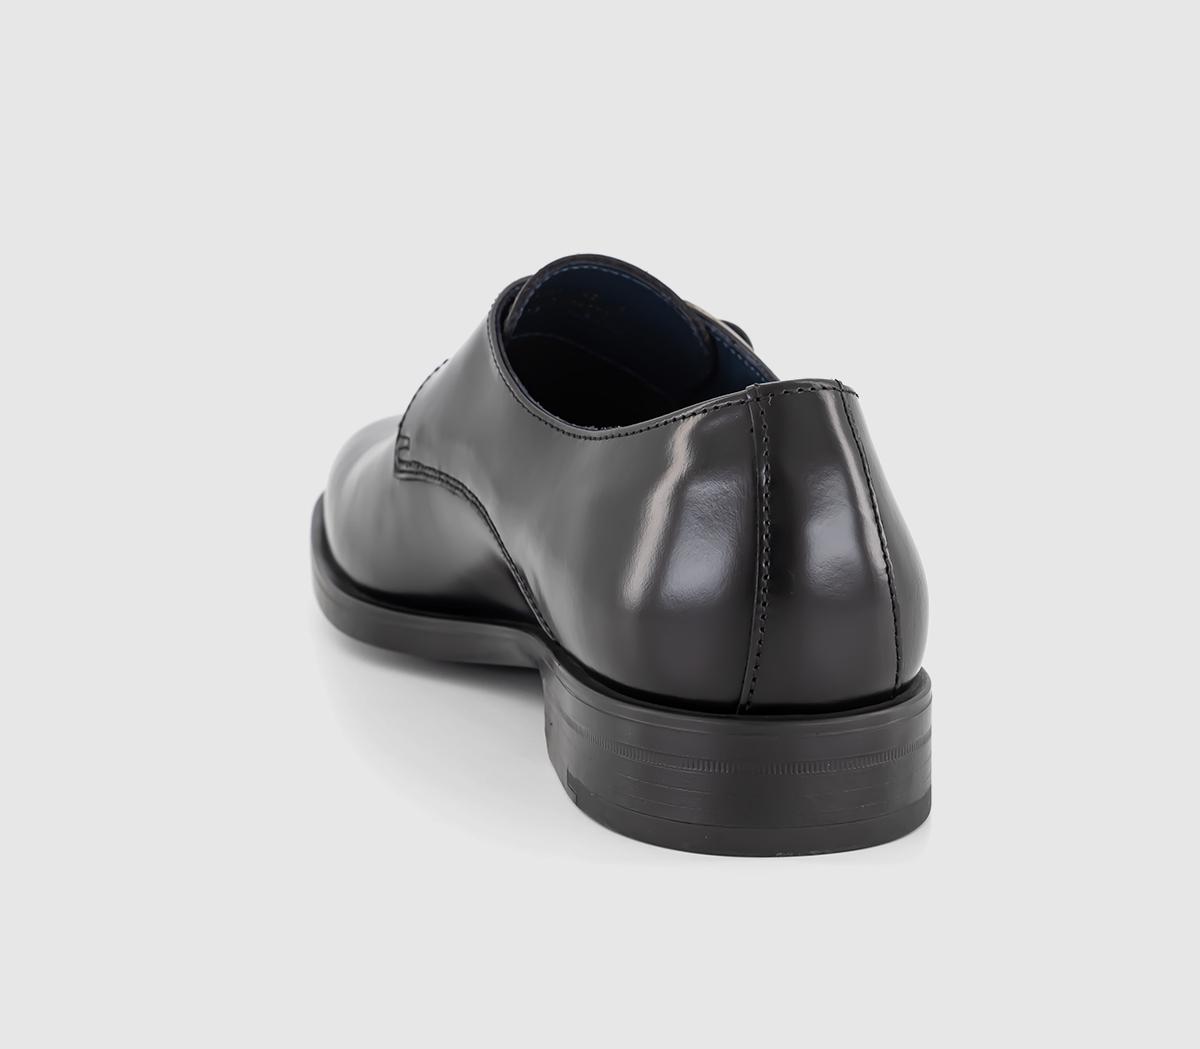 Poste Pierre Single Strap Monk Shoes Black Leather - Men’s Smart Shoes